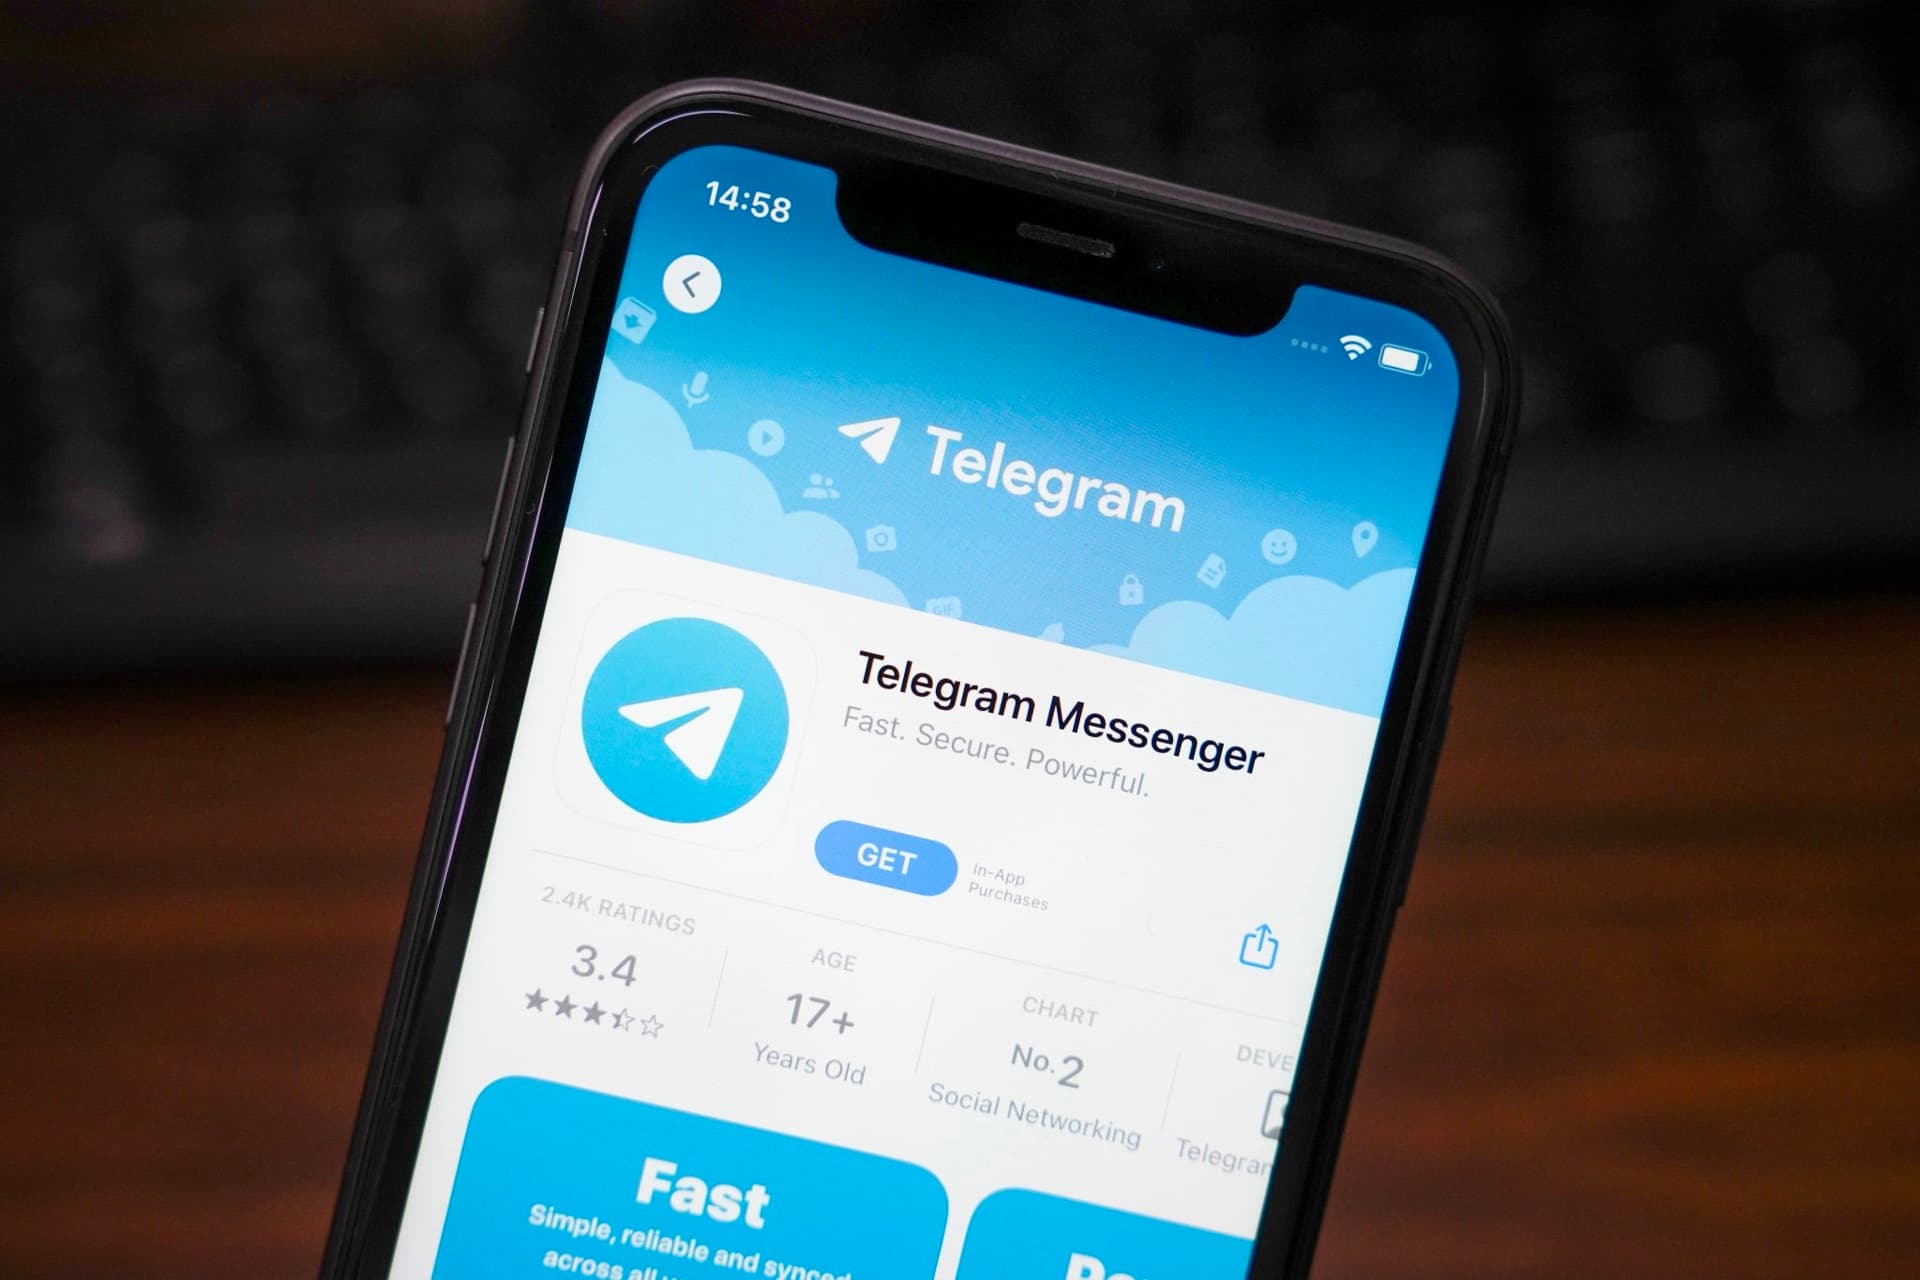 سیومسیج تلگرام بازطراحی شد؛ آپدیت بزرگ پیام رسان telegram - آژانس مدیا و مارکتینگ ردی استودیو